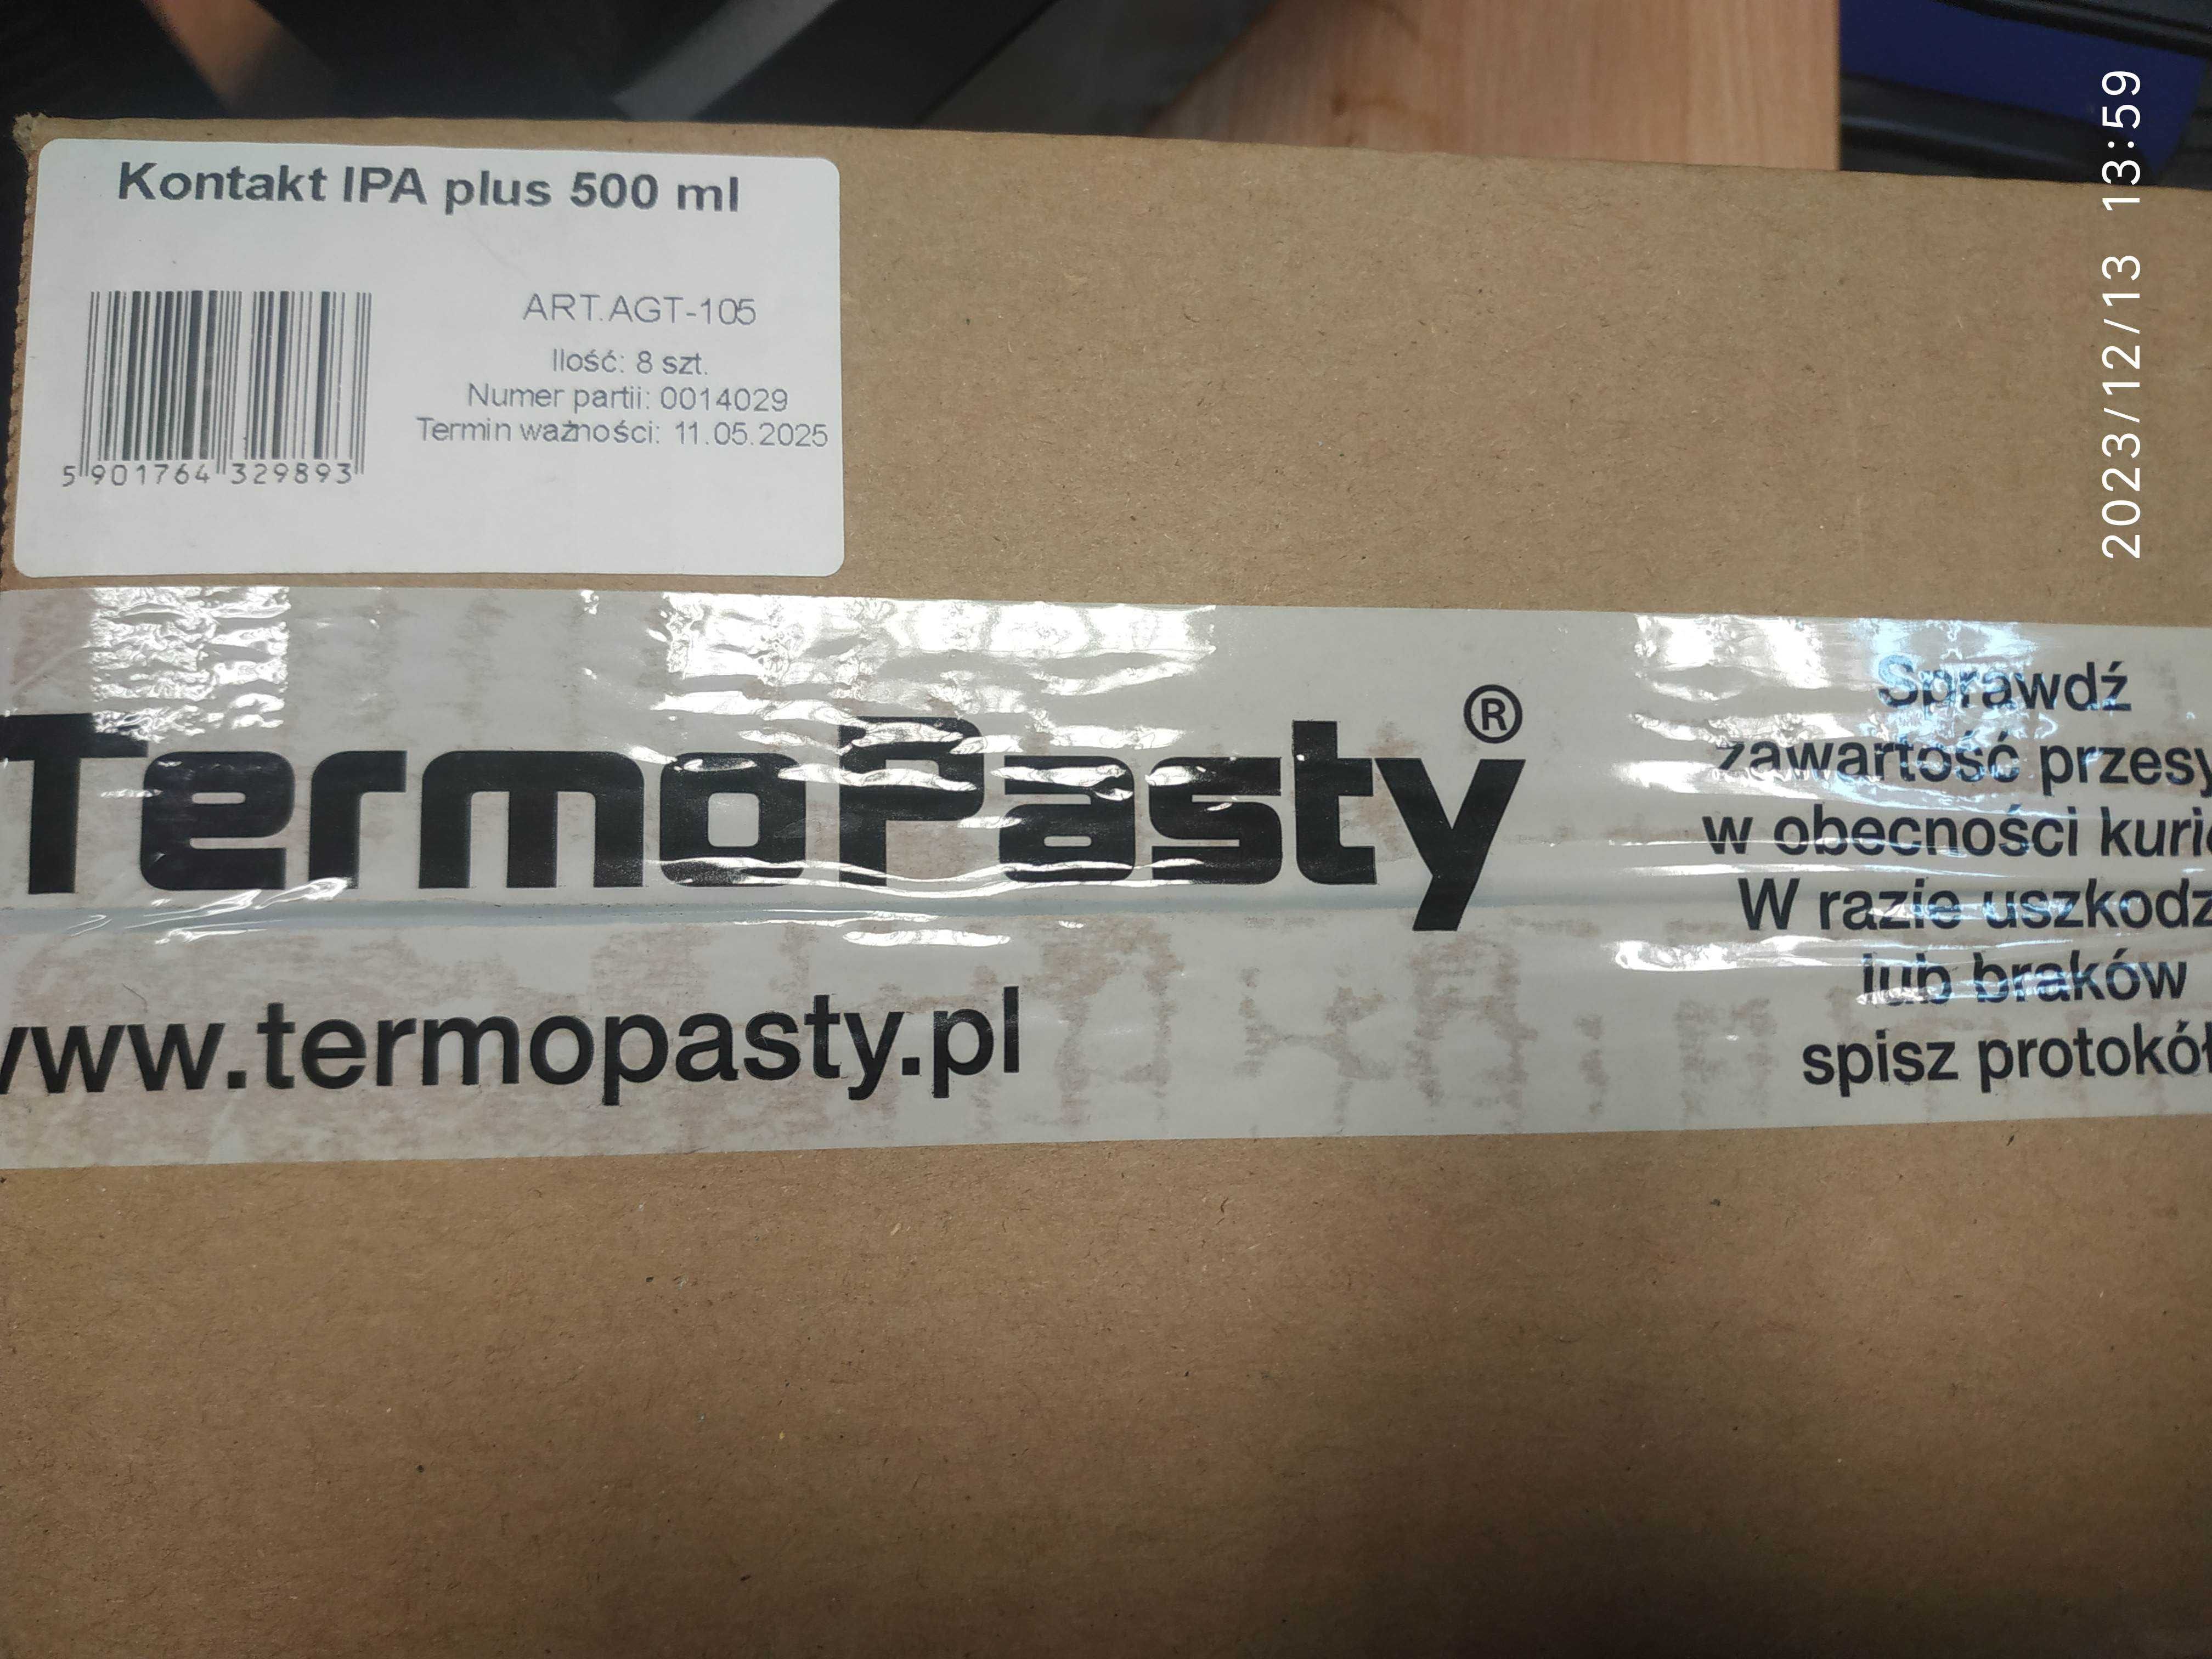 Płyn izopropylowy AG TermoPasty Kontakt IPA Plus 500 ml, AGT-105,8 szt